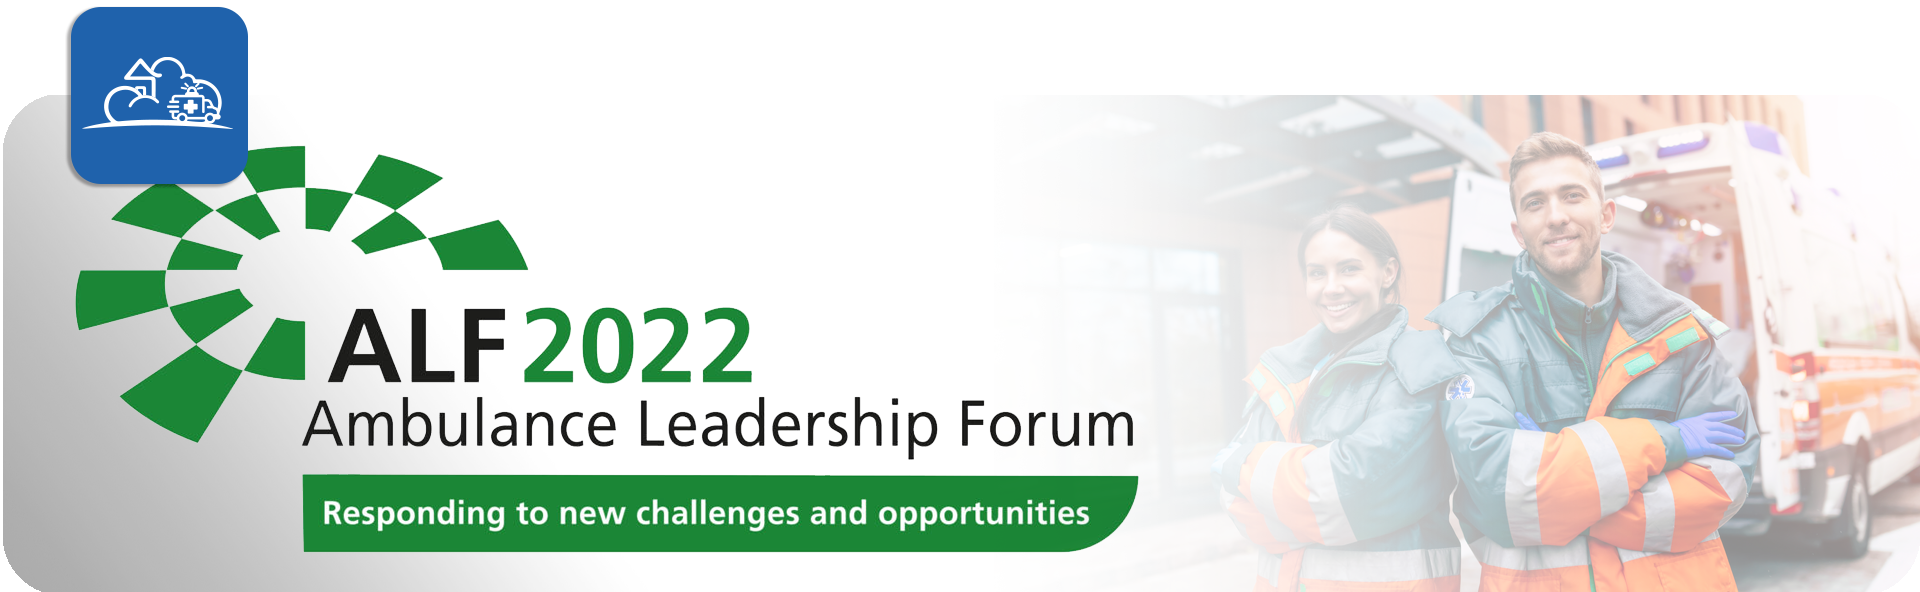 Ambulance Leadership Forum 2022 CSS Europe Ltd